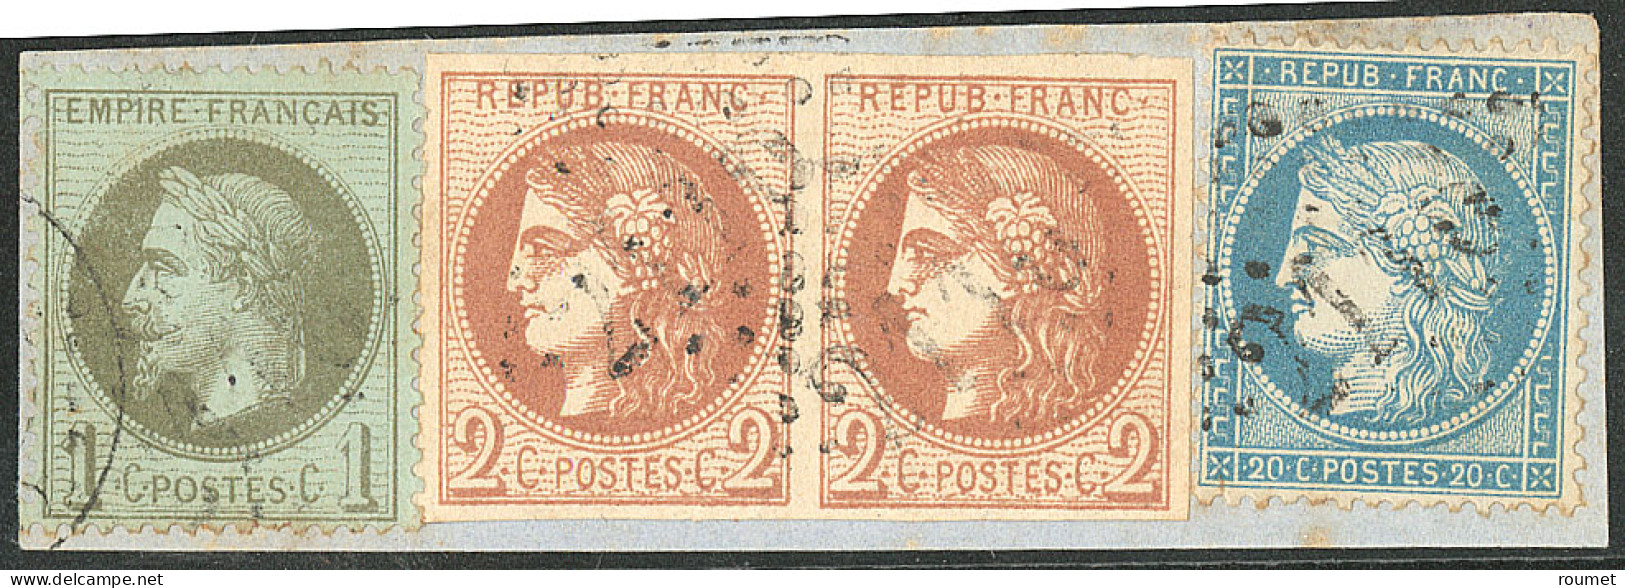 Tricolore. Nos 40B Brun-rouge Paire + 25 + 37, Sur Petit Fragment De Lettre. - TB - 1870 Emission De Bordeaux